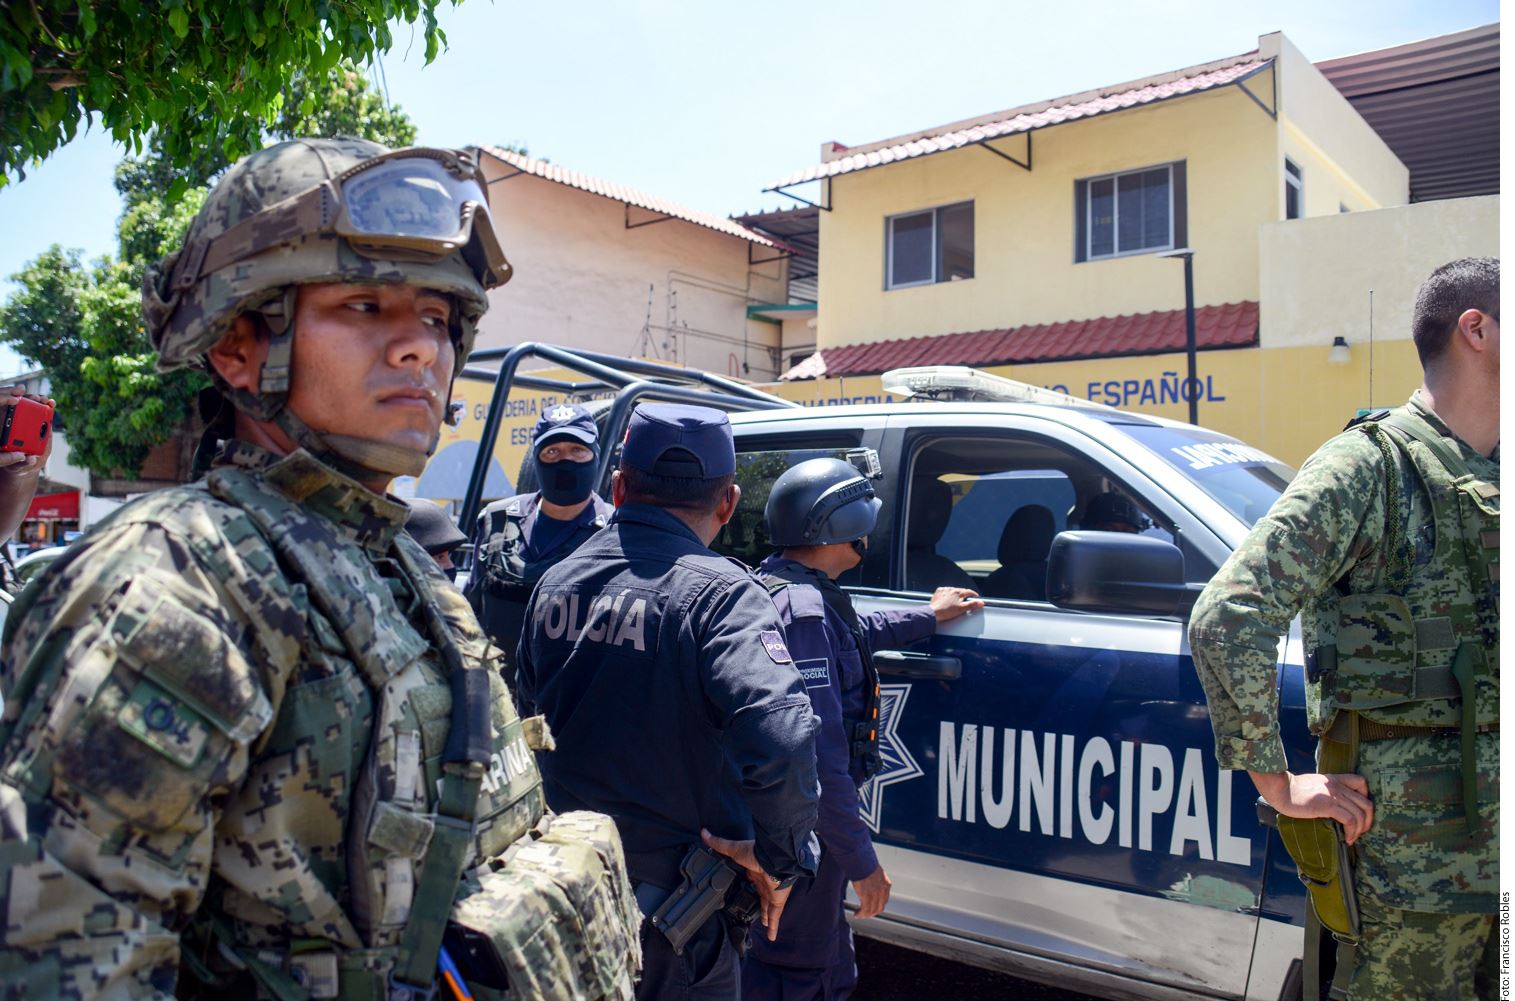 Los marinos y los federales detuvieron a los jefe operativos Luis Fernando y Brayan Antonio, acusados por el delito de homicidio calificado. También capturaron en un fraccionamiento al director de Tránsito y Vialidad, Rafael Rivas.